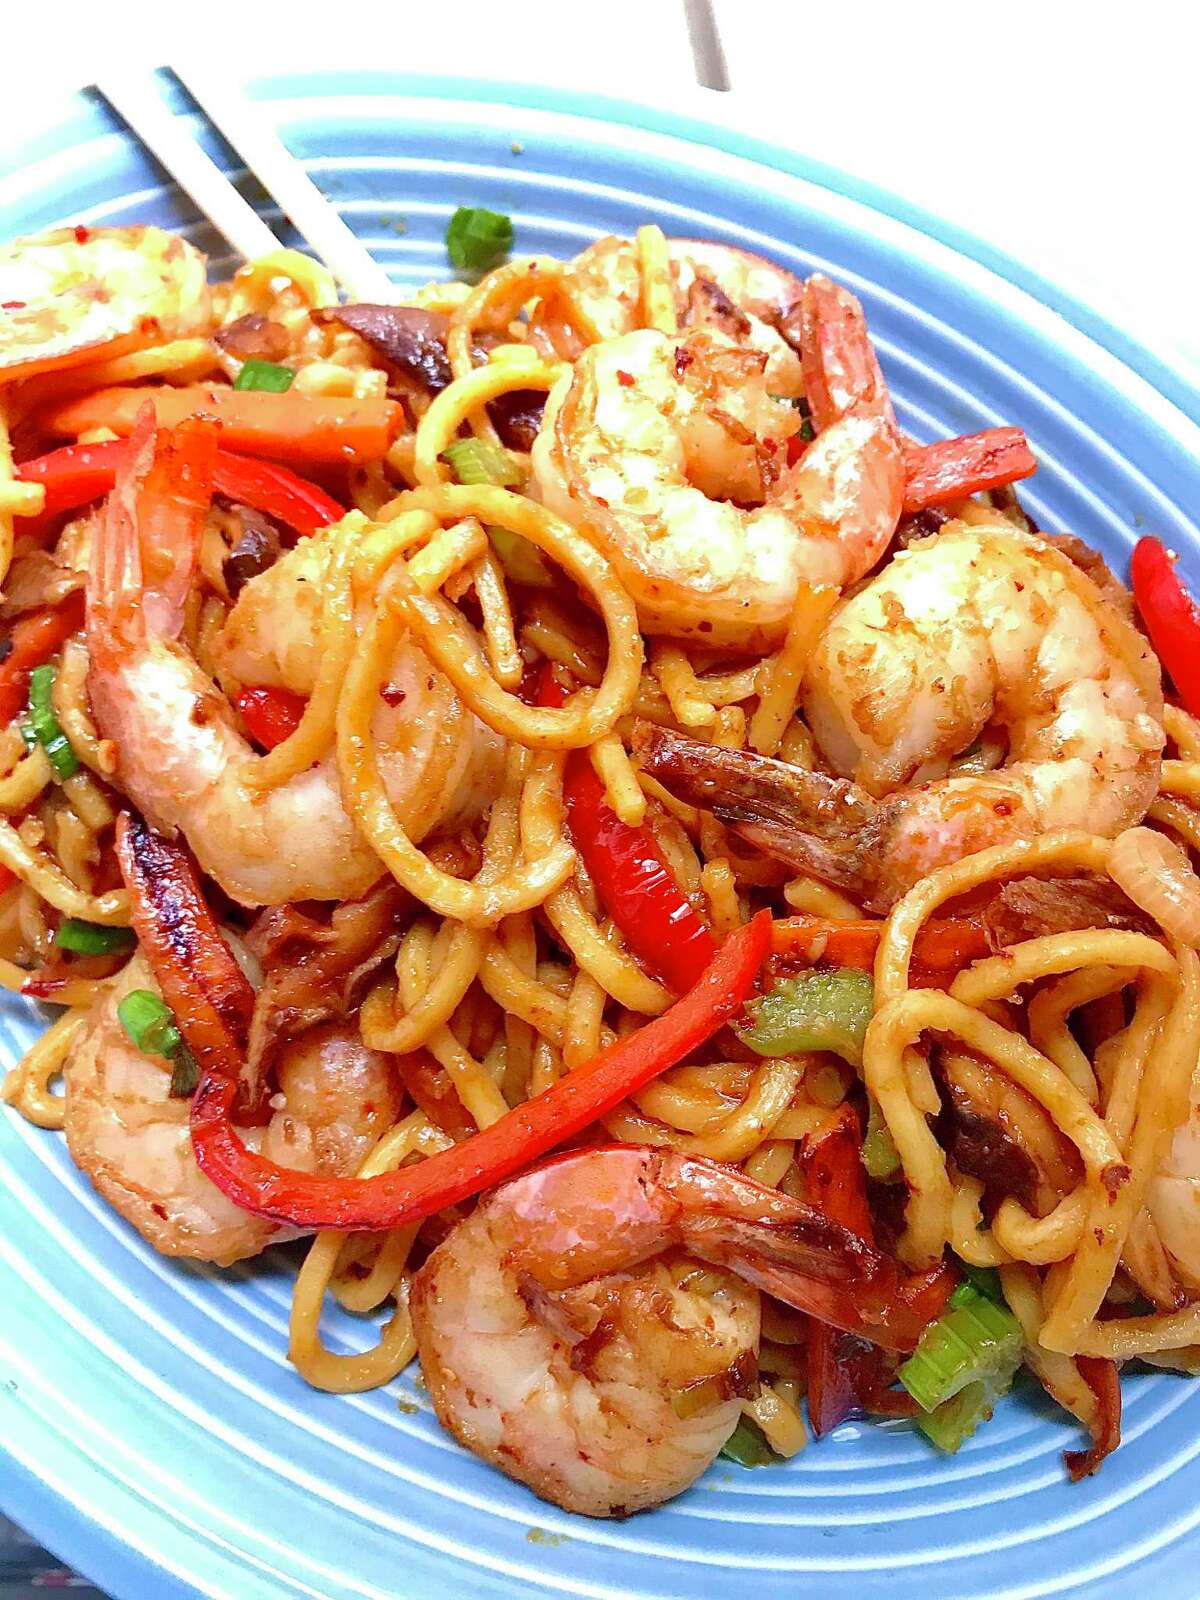 Recipe: Stir-Fry Noodles with Shrimp